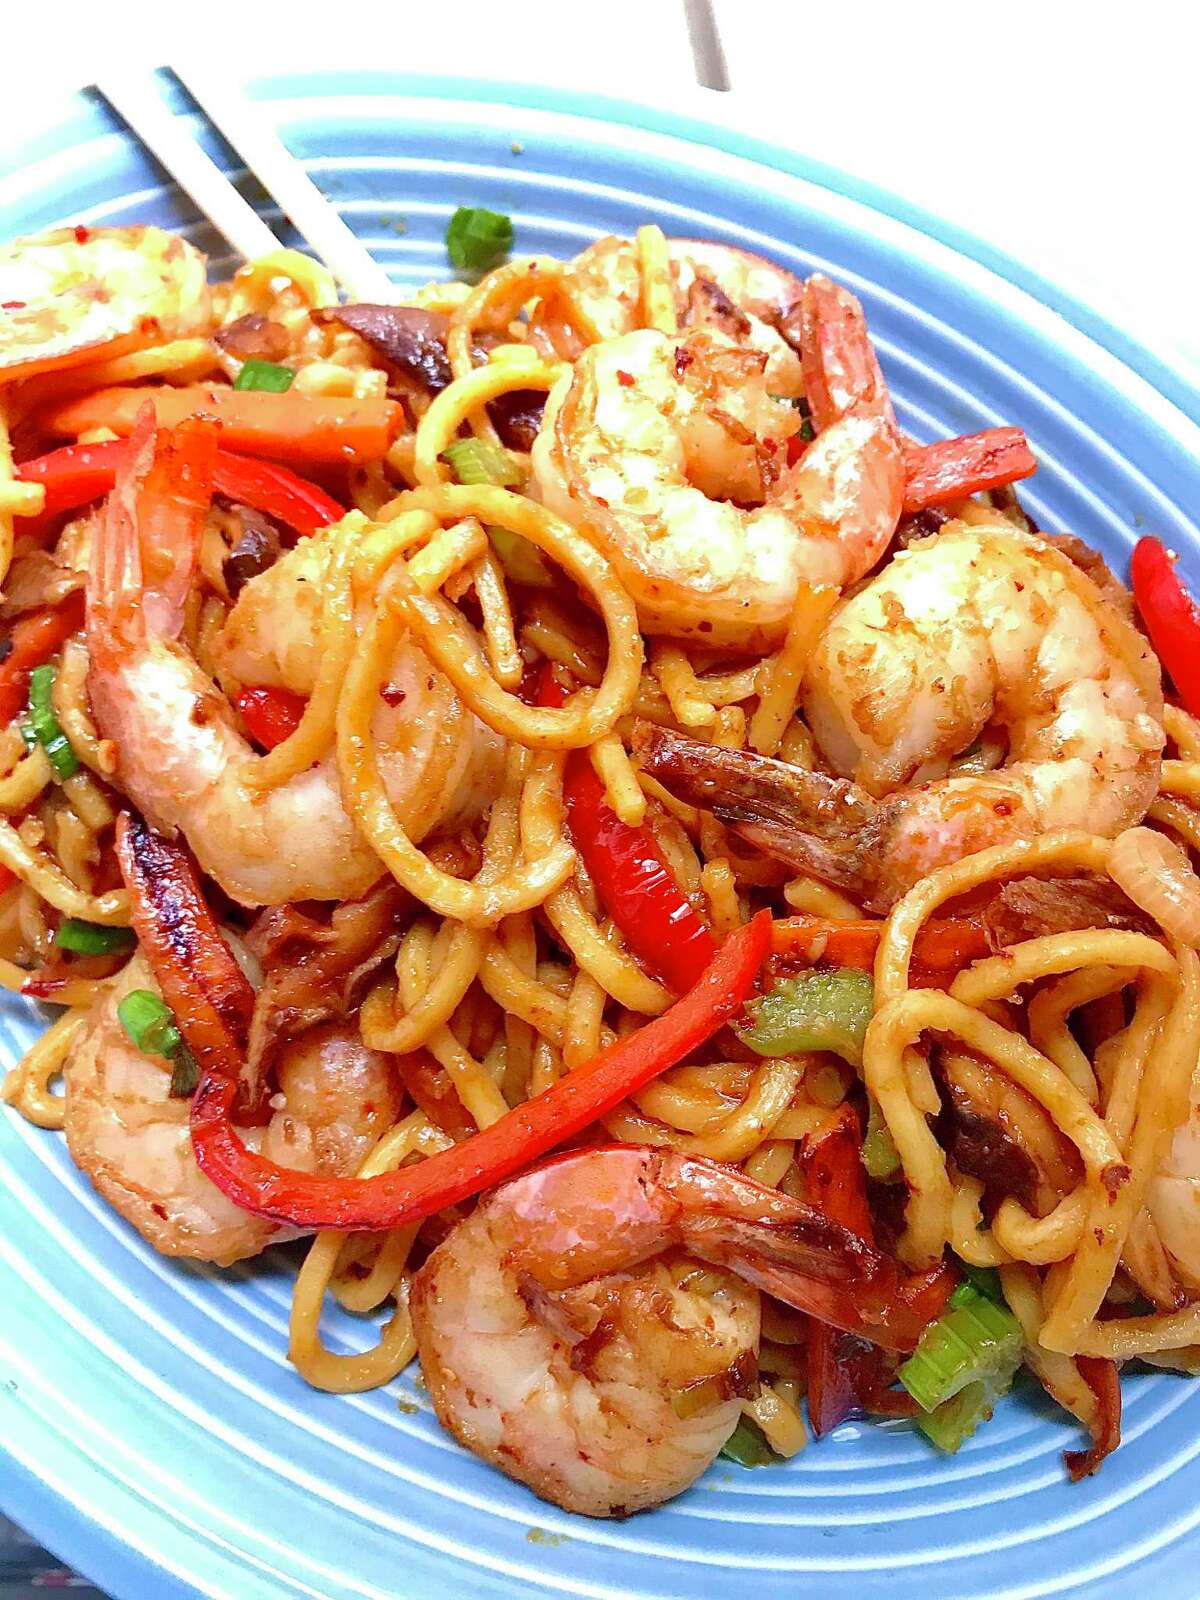 Recipe: Stir-Fry Noodles with Shrimp